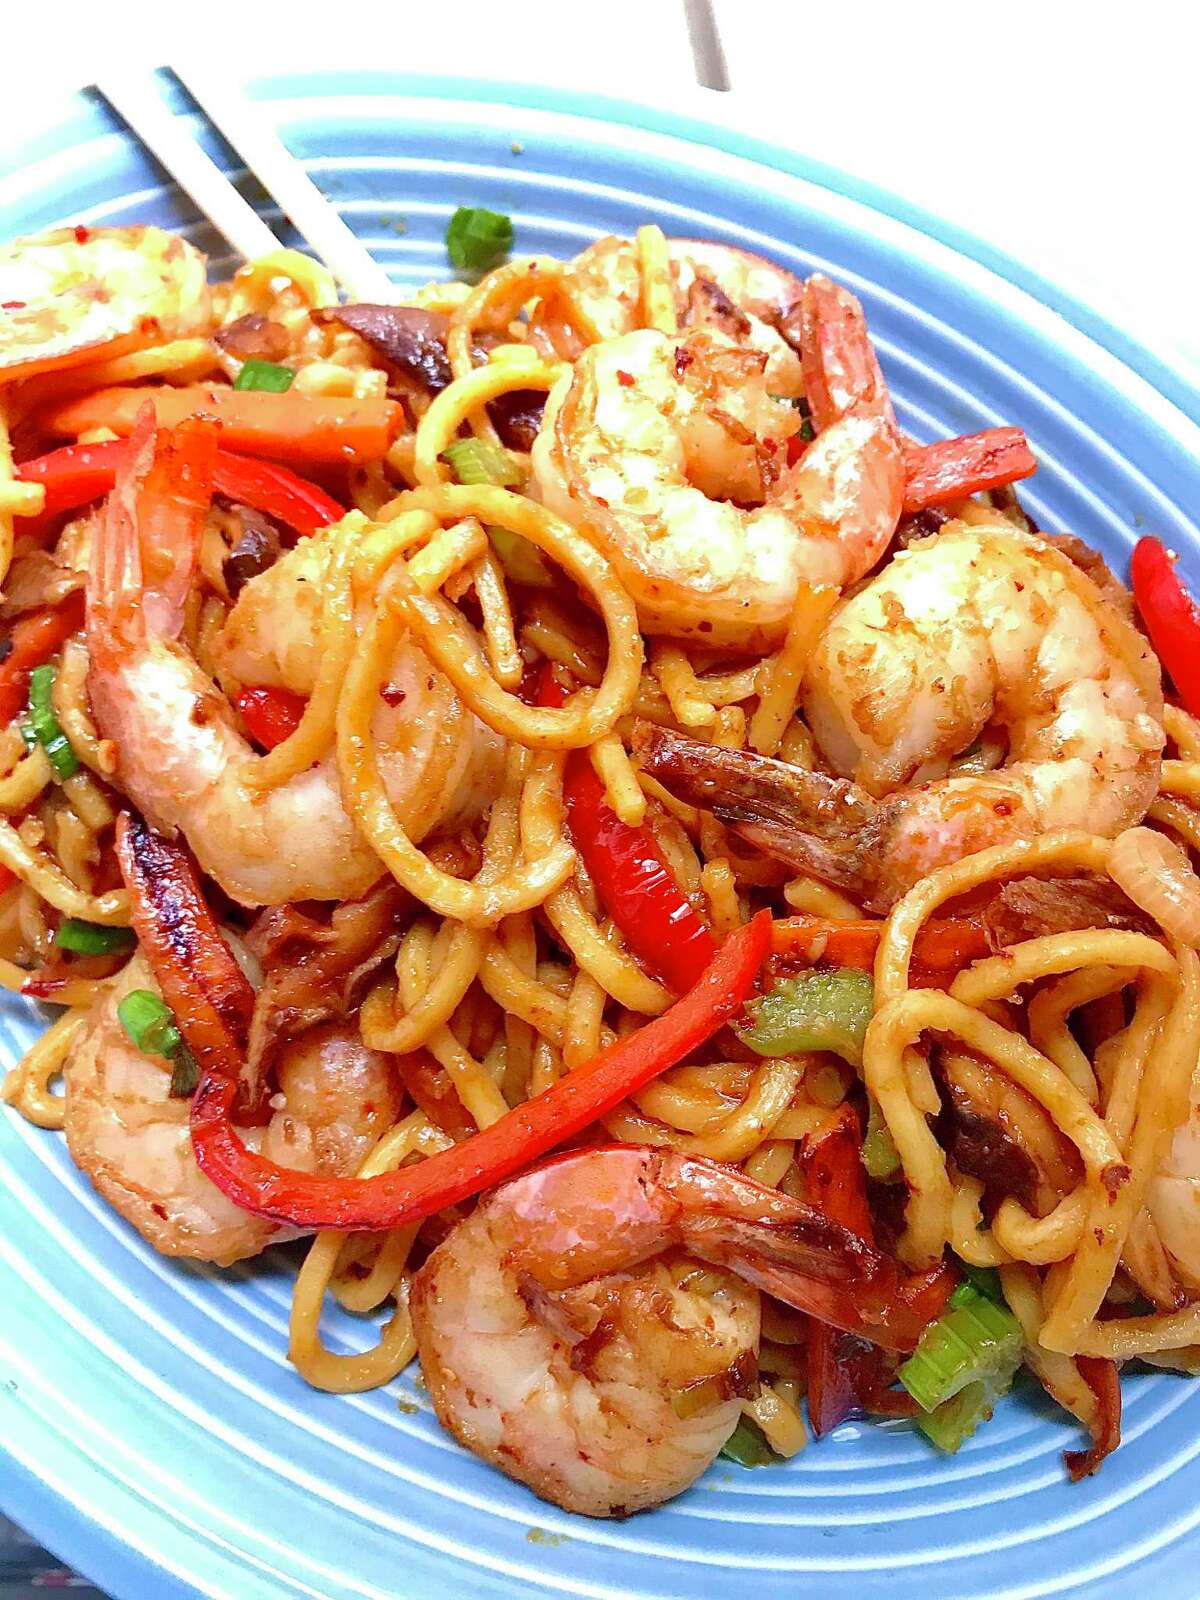 Recipe: Stir-Fry Noodles with Shrimp